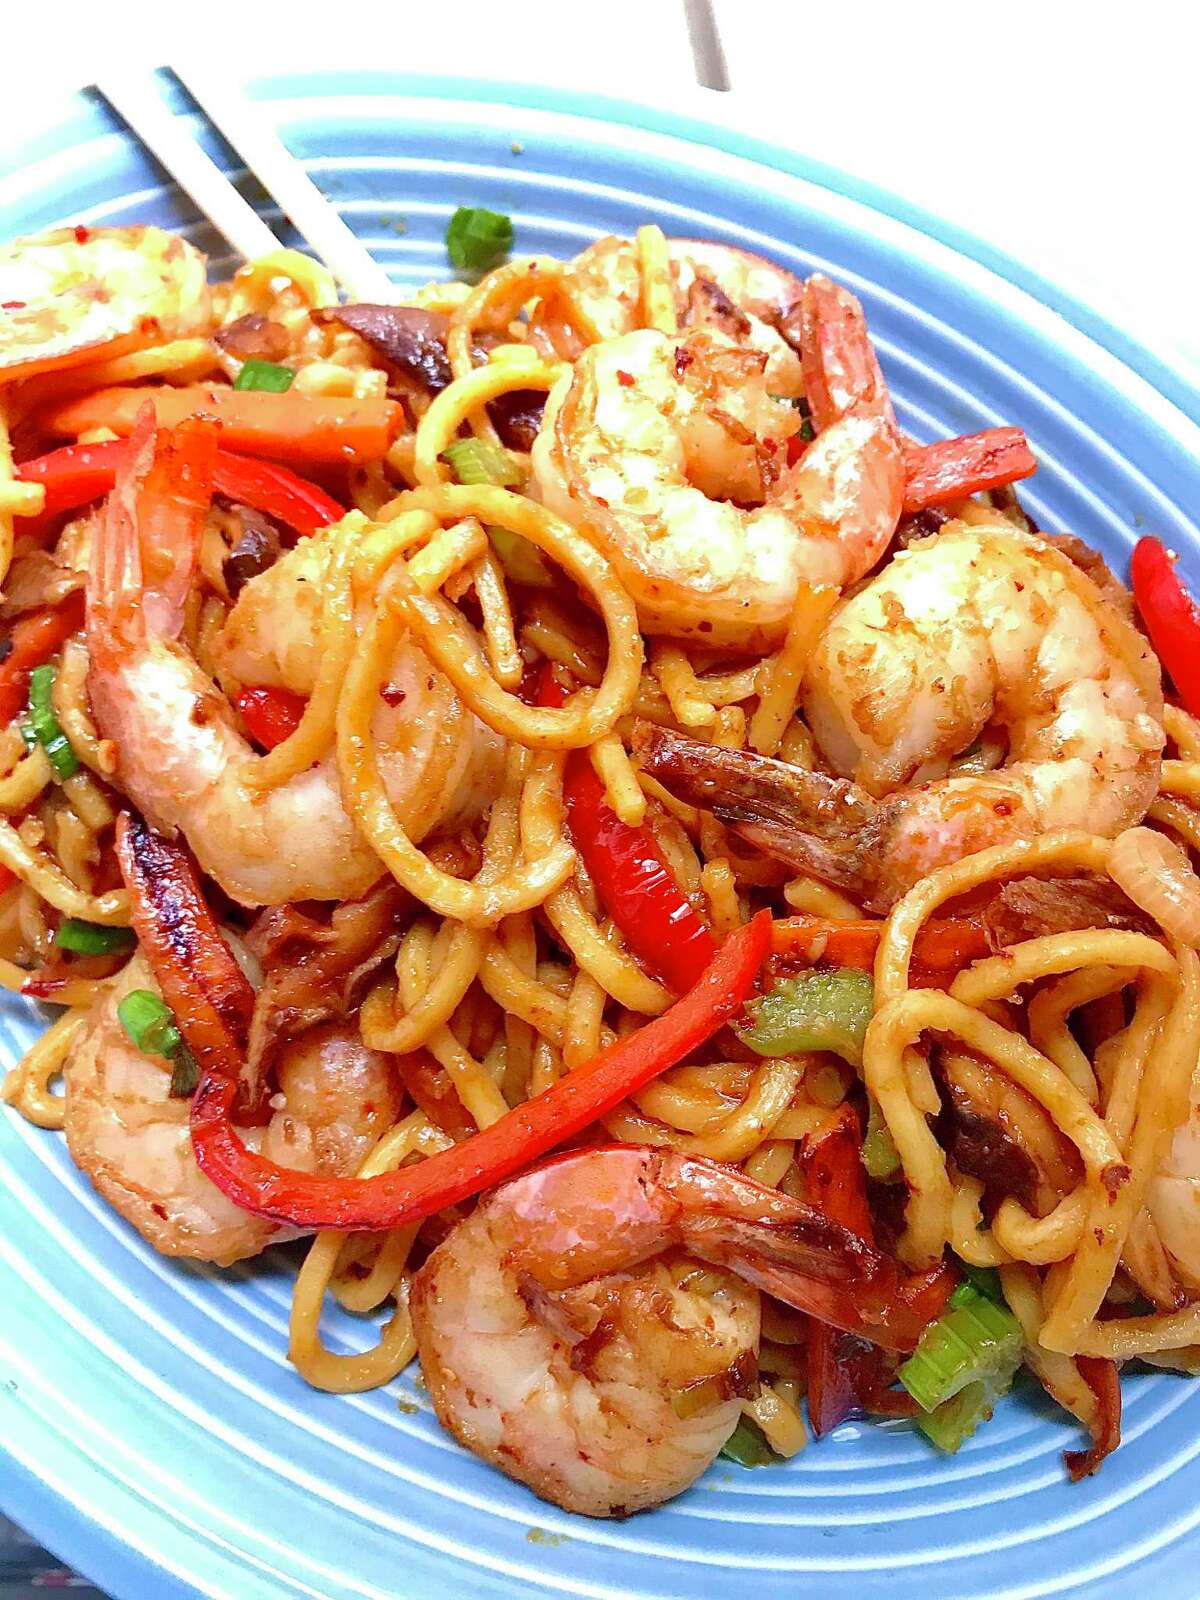 Recipe: Stir-Fry Noodles with Shrimp